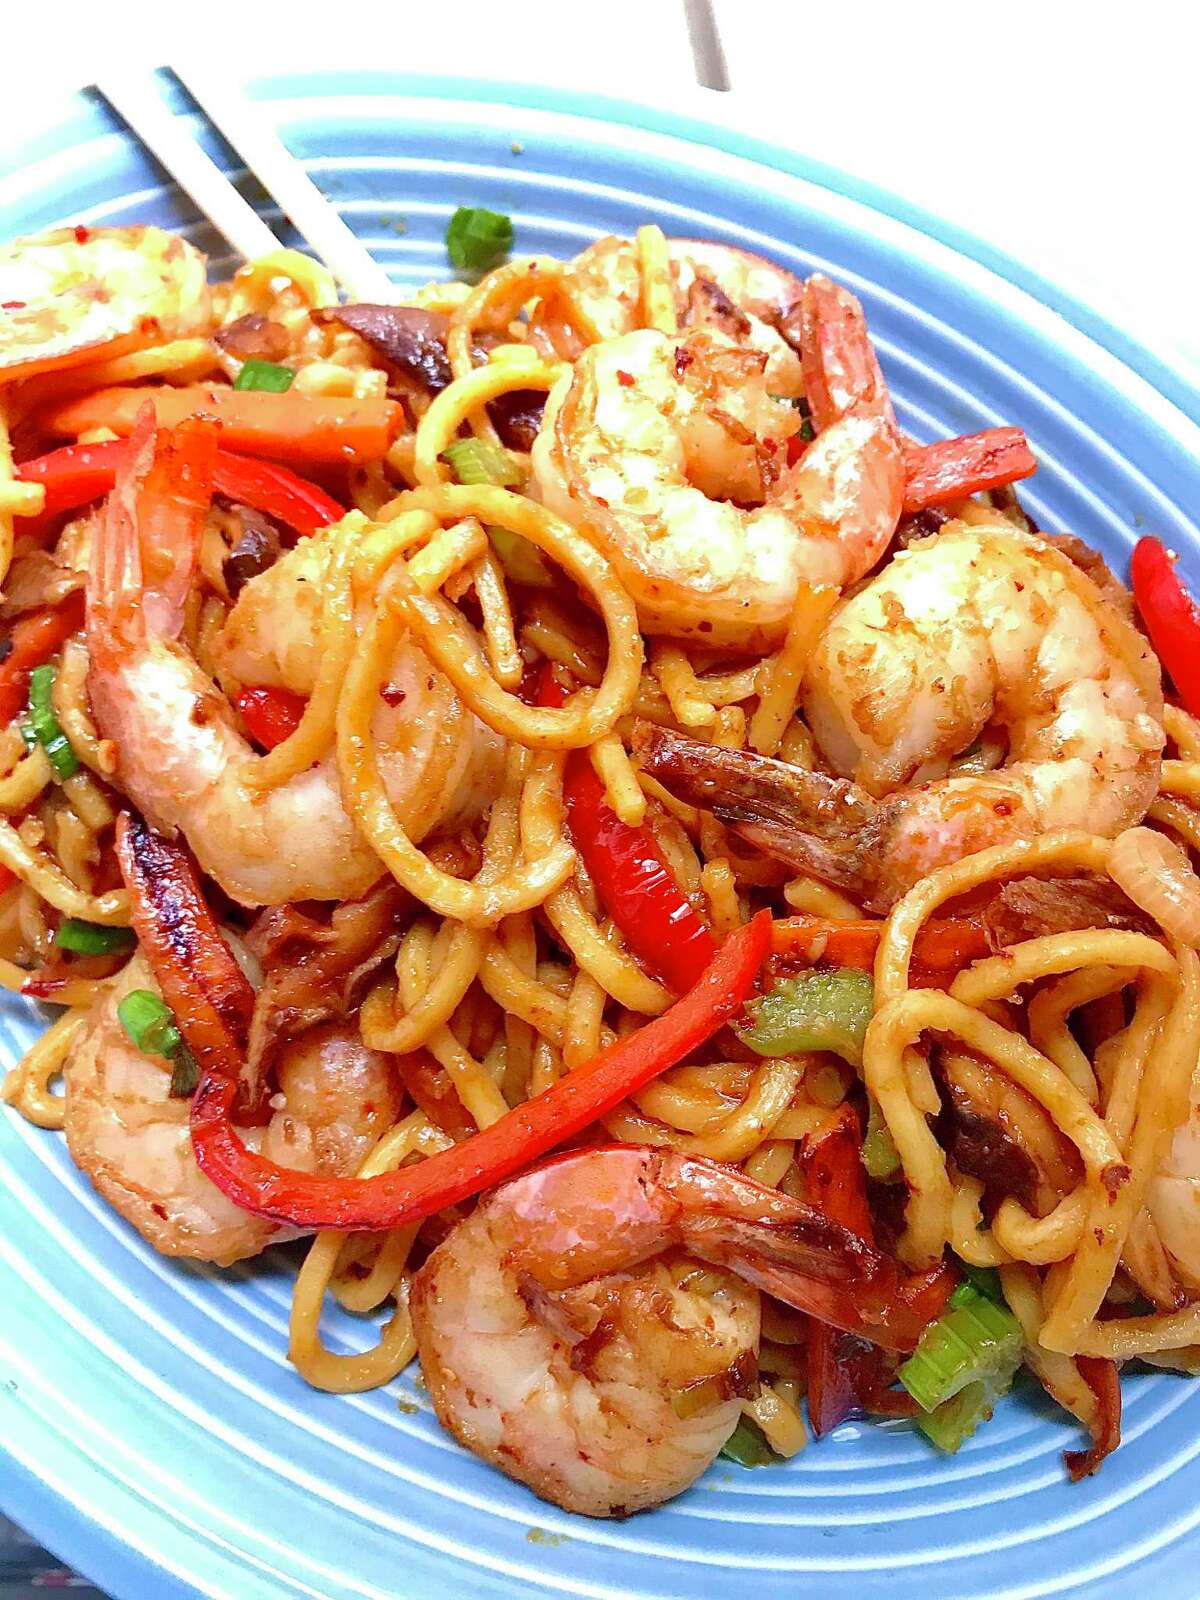 Recipe: Stir-Fry Noodles with Shrimp